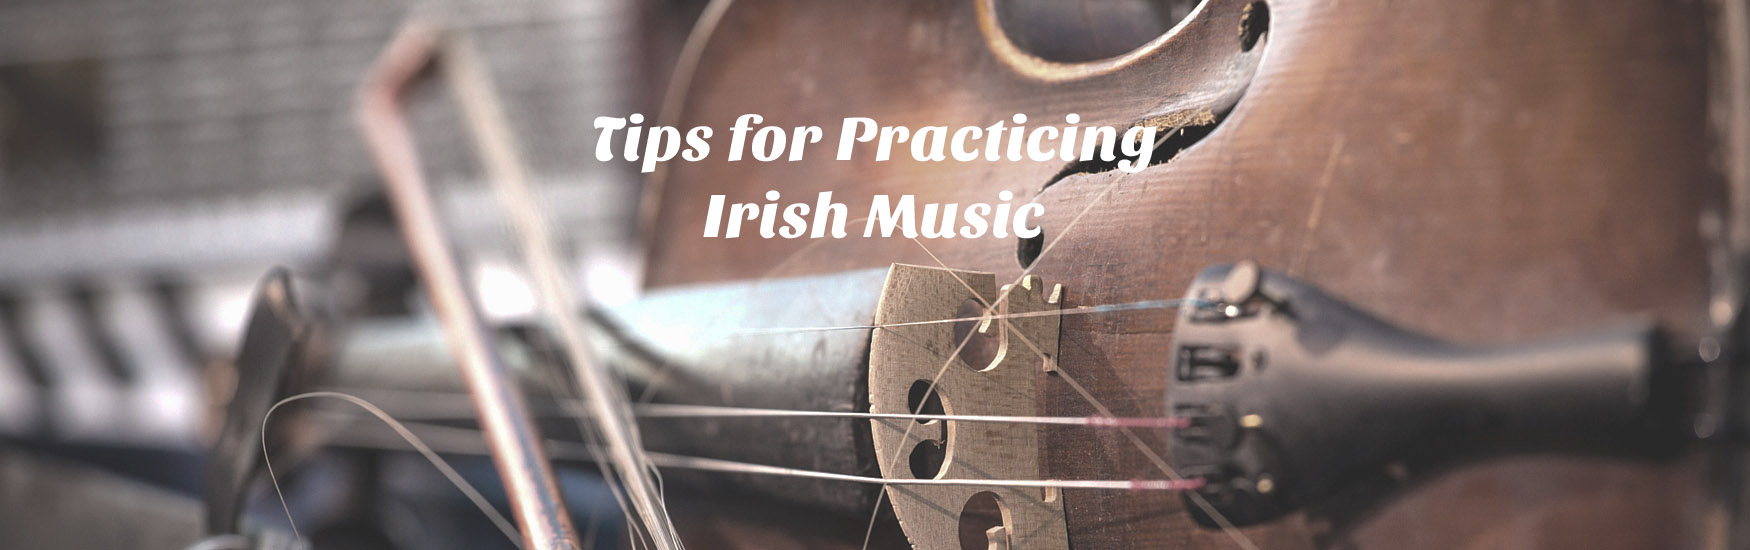 Tips for Practicing Irish Music - Milwaukee Irish Fest School of Music